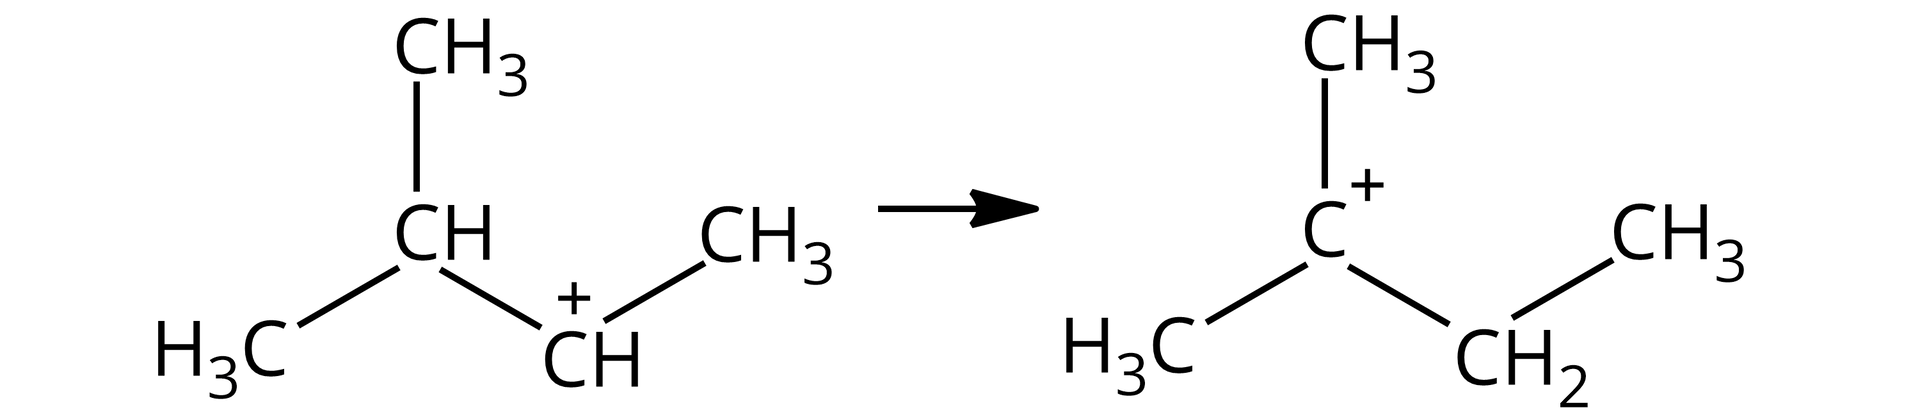 Na ilustracji jest karbokation 3-metylo-2-butylowy o strukturze grupa CH obdarzona cząstkowym ładunkiem dodatnim związana z grupą CH3 oraz grupą CH, która to łączy się z dwiema grupami CH3 przegrupowuje się do karbokationu 2-metylo-2-butylowego o strukturze węgiel C obdarzony cząstkowym ładunkiem dodatnim związany z dwiema grupami CH3 oraz grupą CH2CH3. 